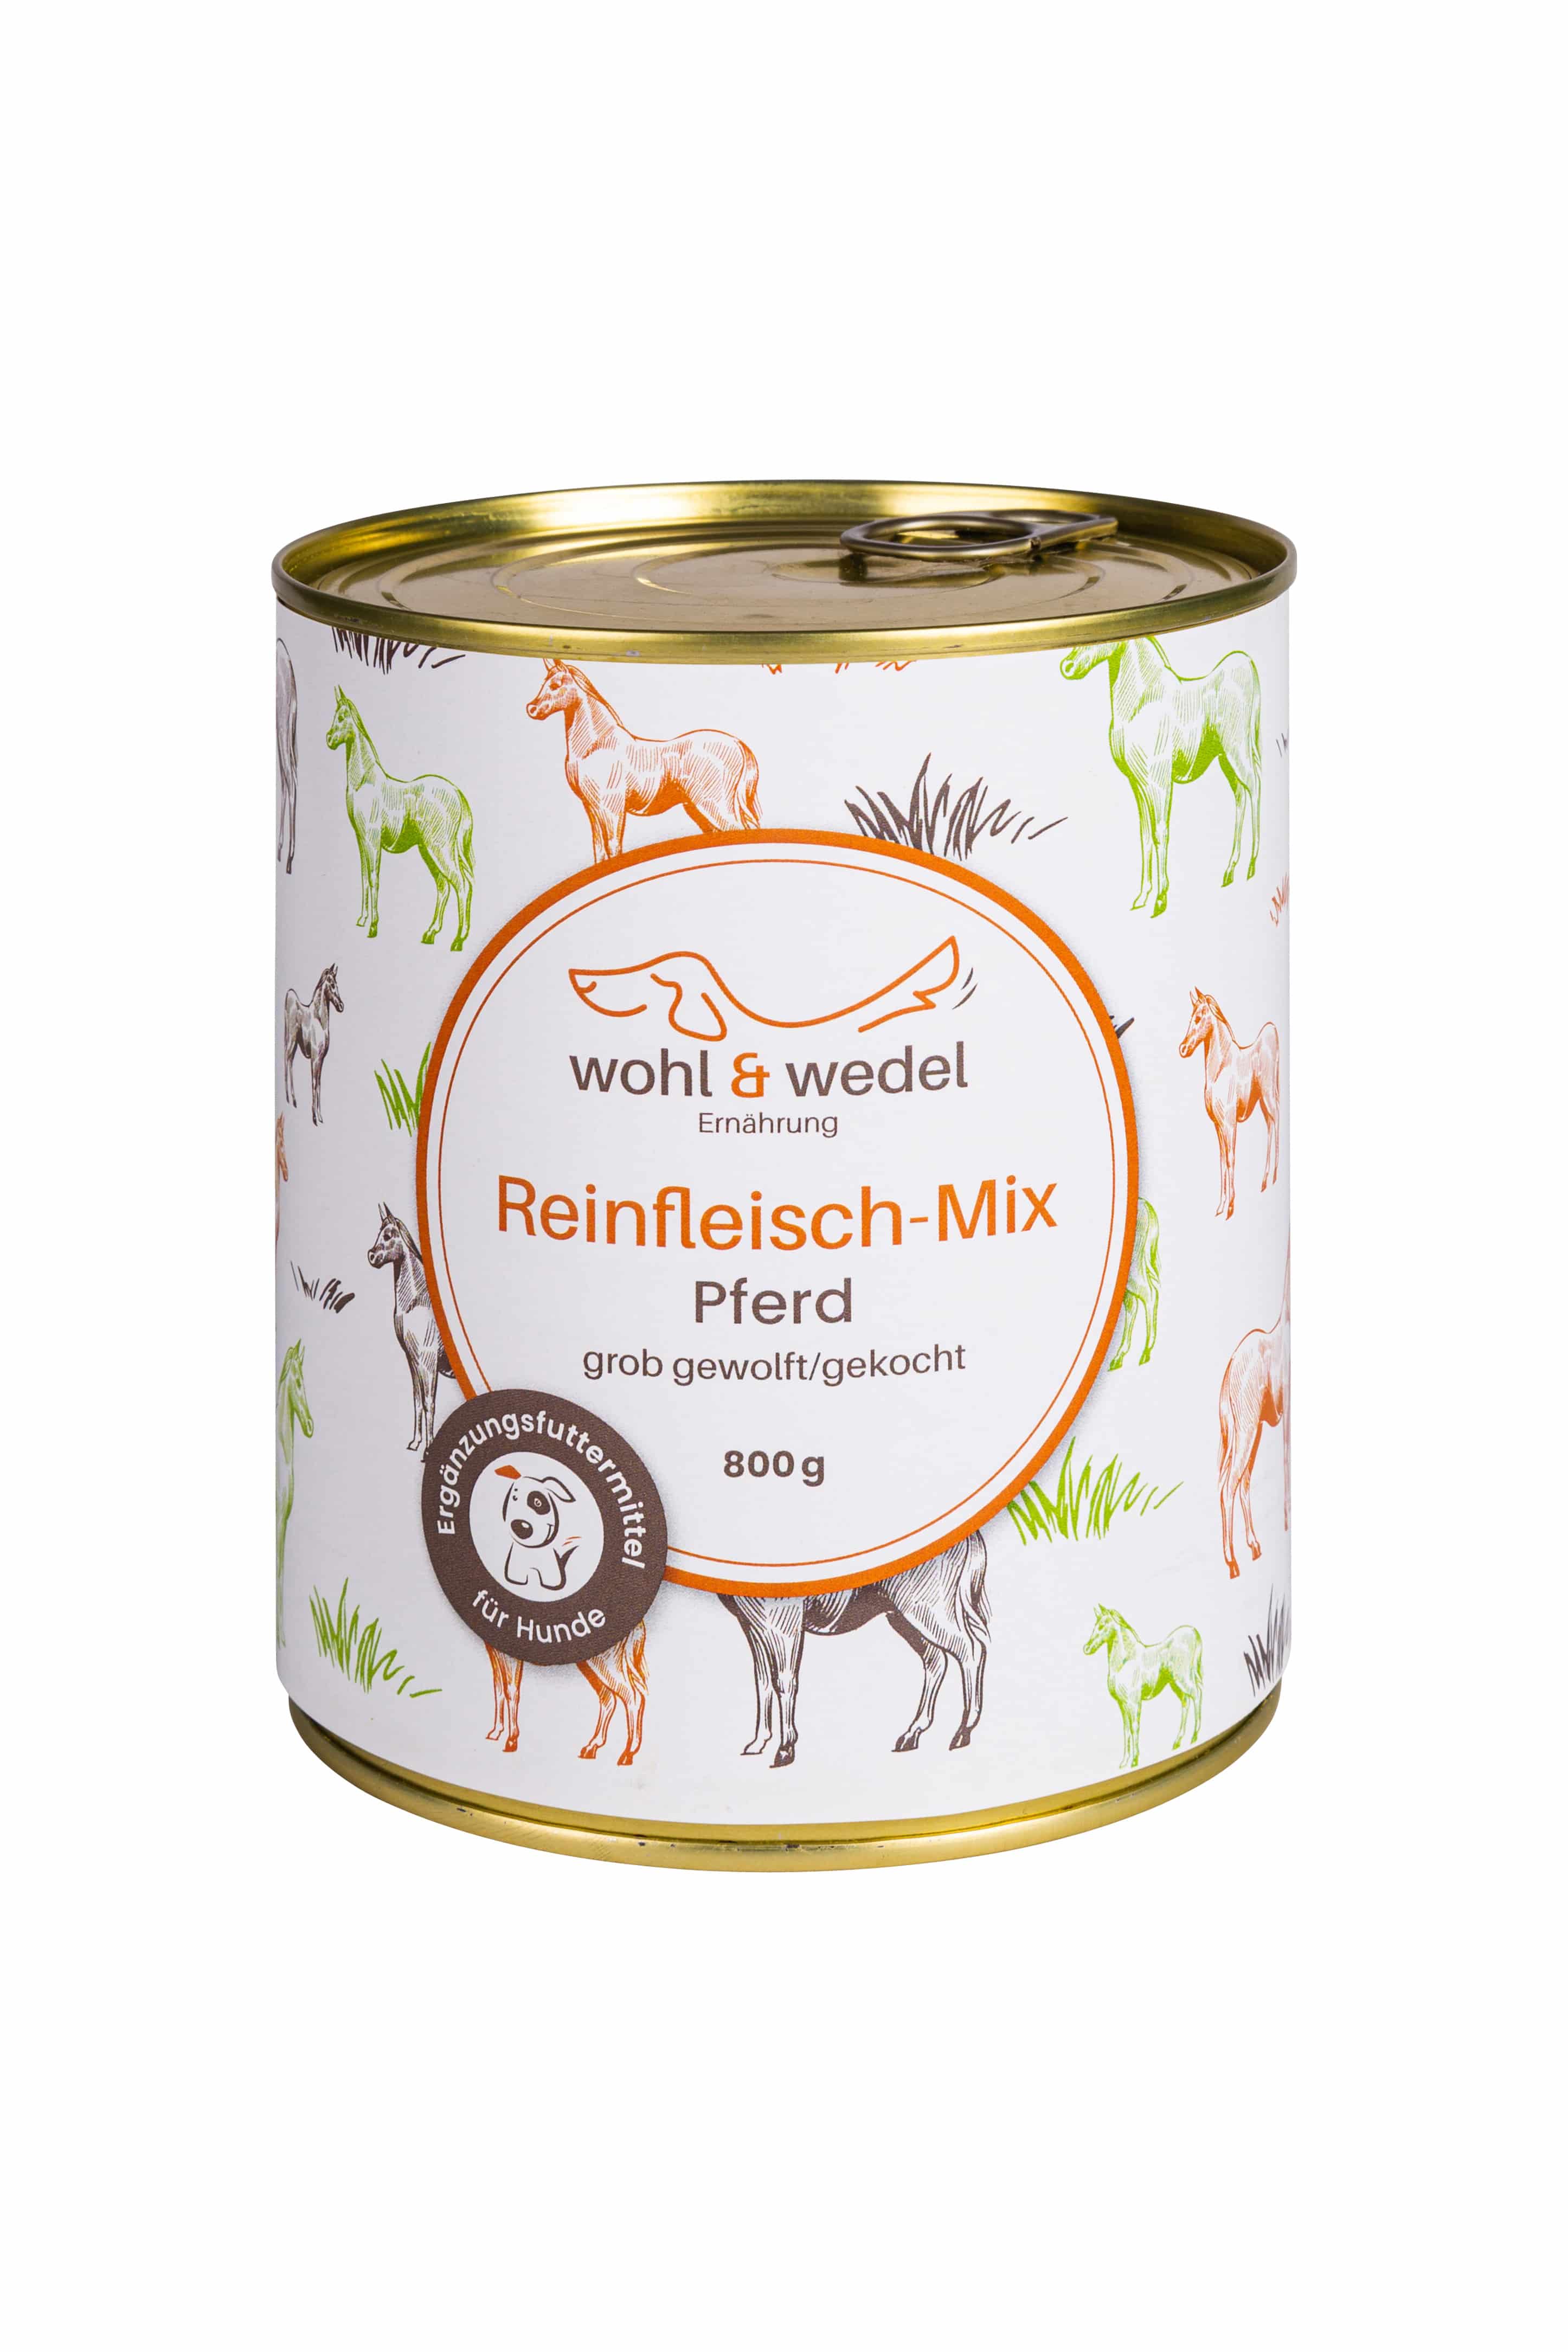 wohl & wedel Reinfleisch-Mix Pferd 800 g  